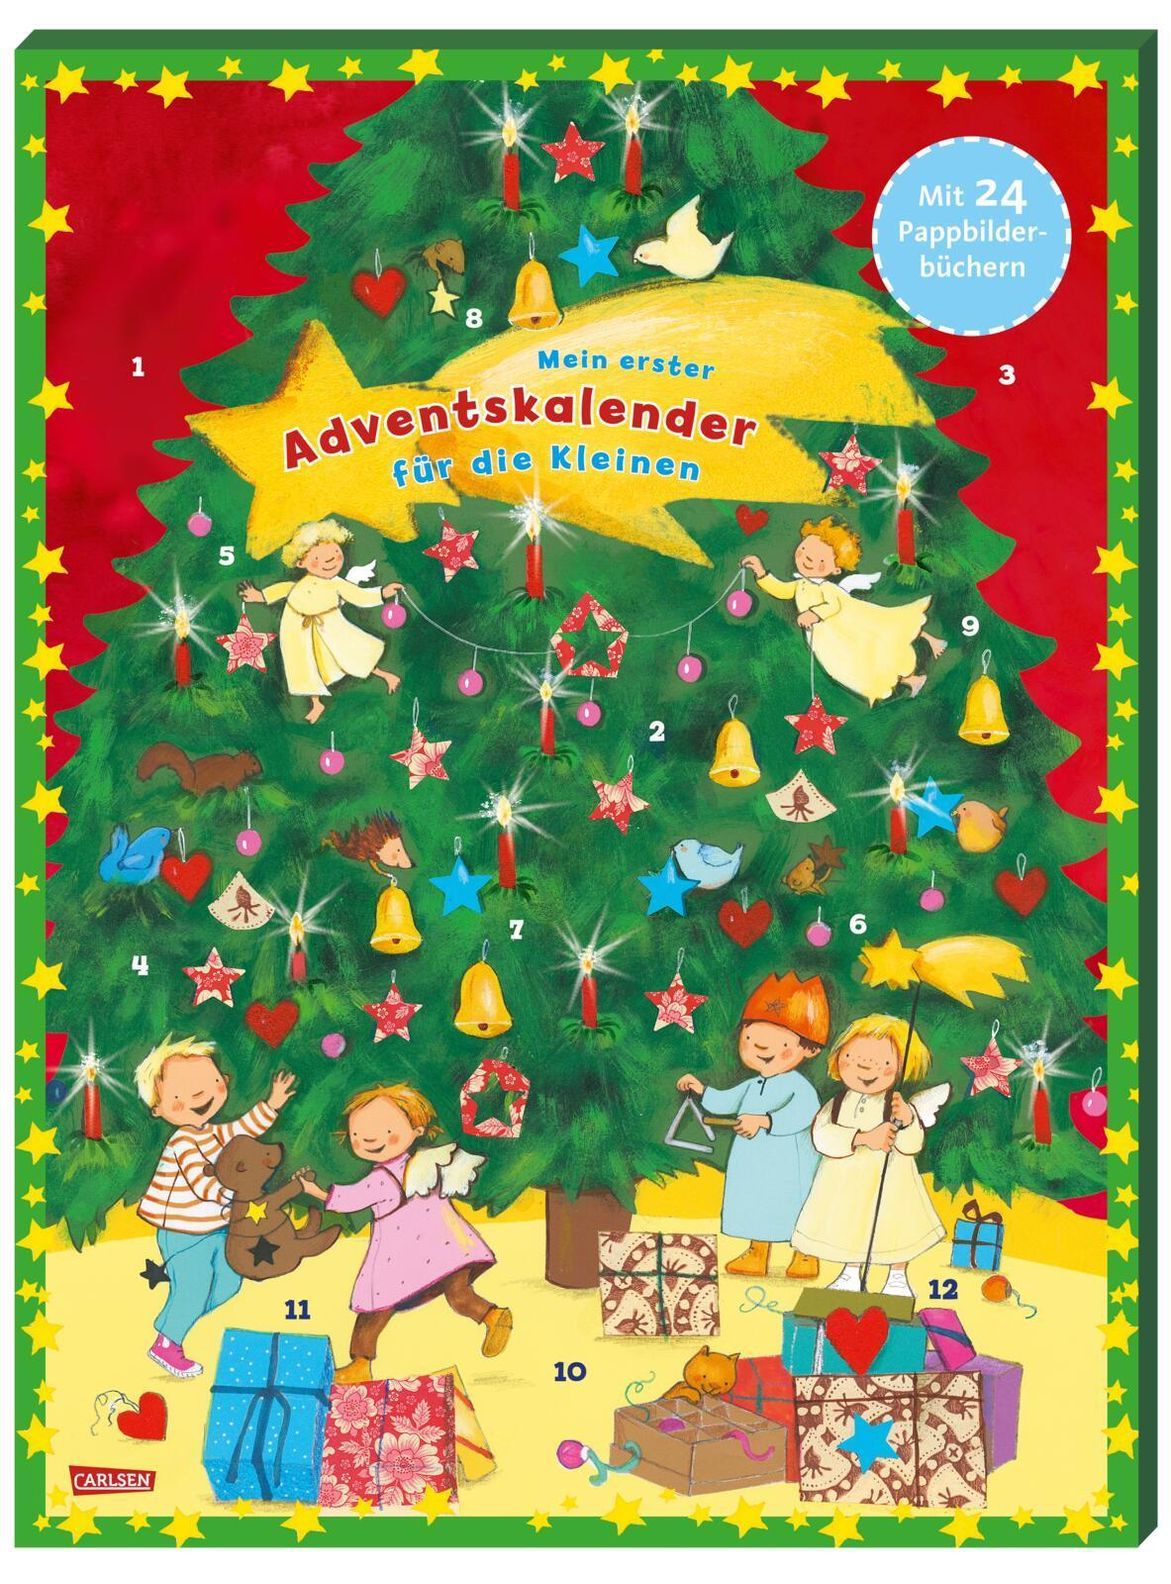 Mein erster Pixi Adventskalender für die Kleinen - mit 24 Pappbilderbüchern  - 2021 Buch versandkostenfrei bei Weltbild.de bestellen